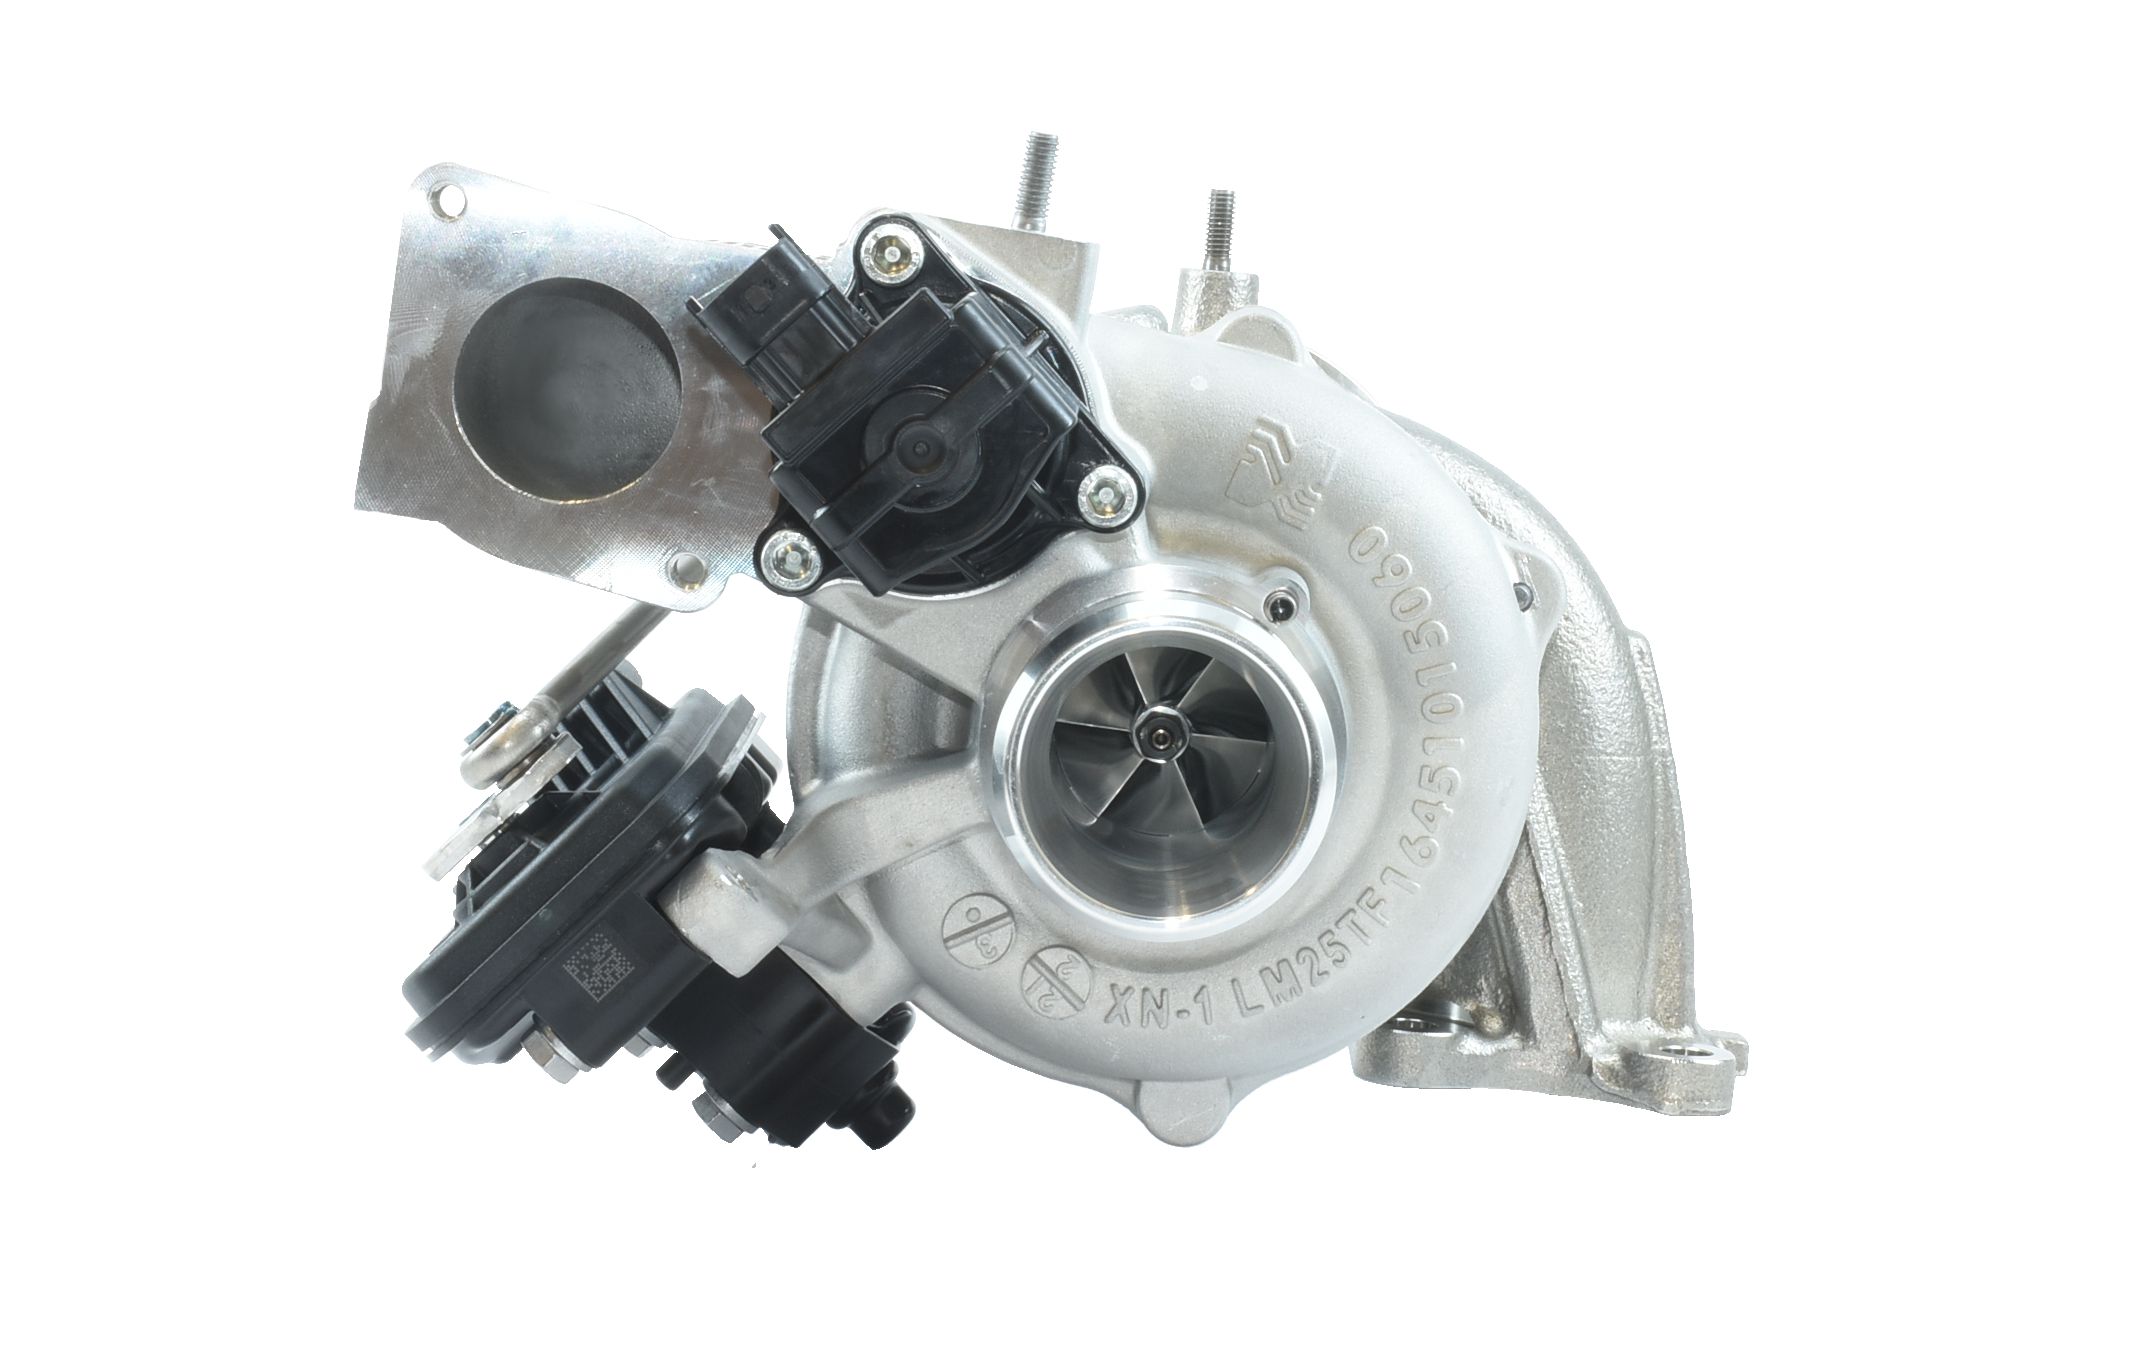 O design compacto do turbocompressor atende a motores pequenos de alto desempenho.